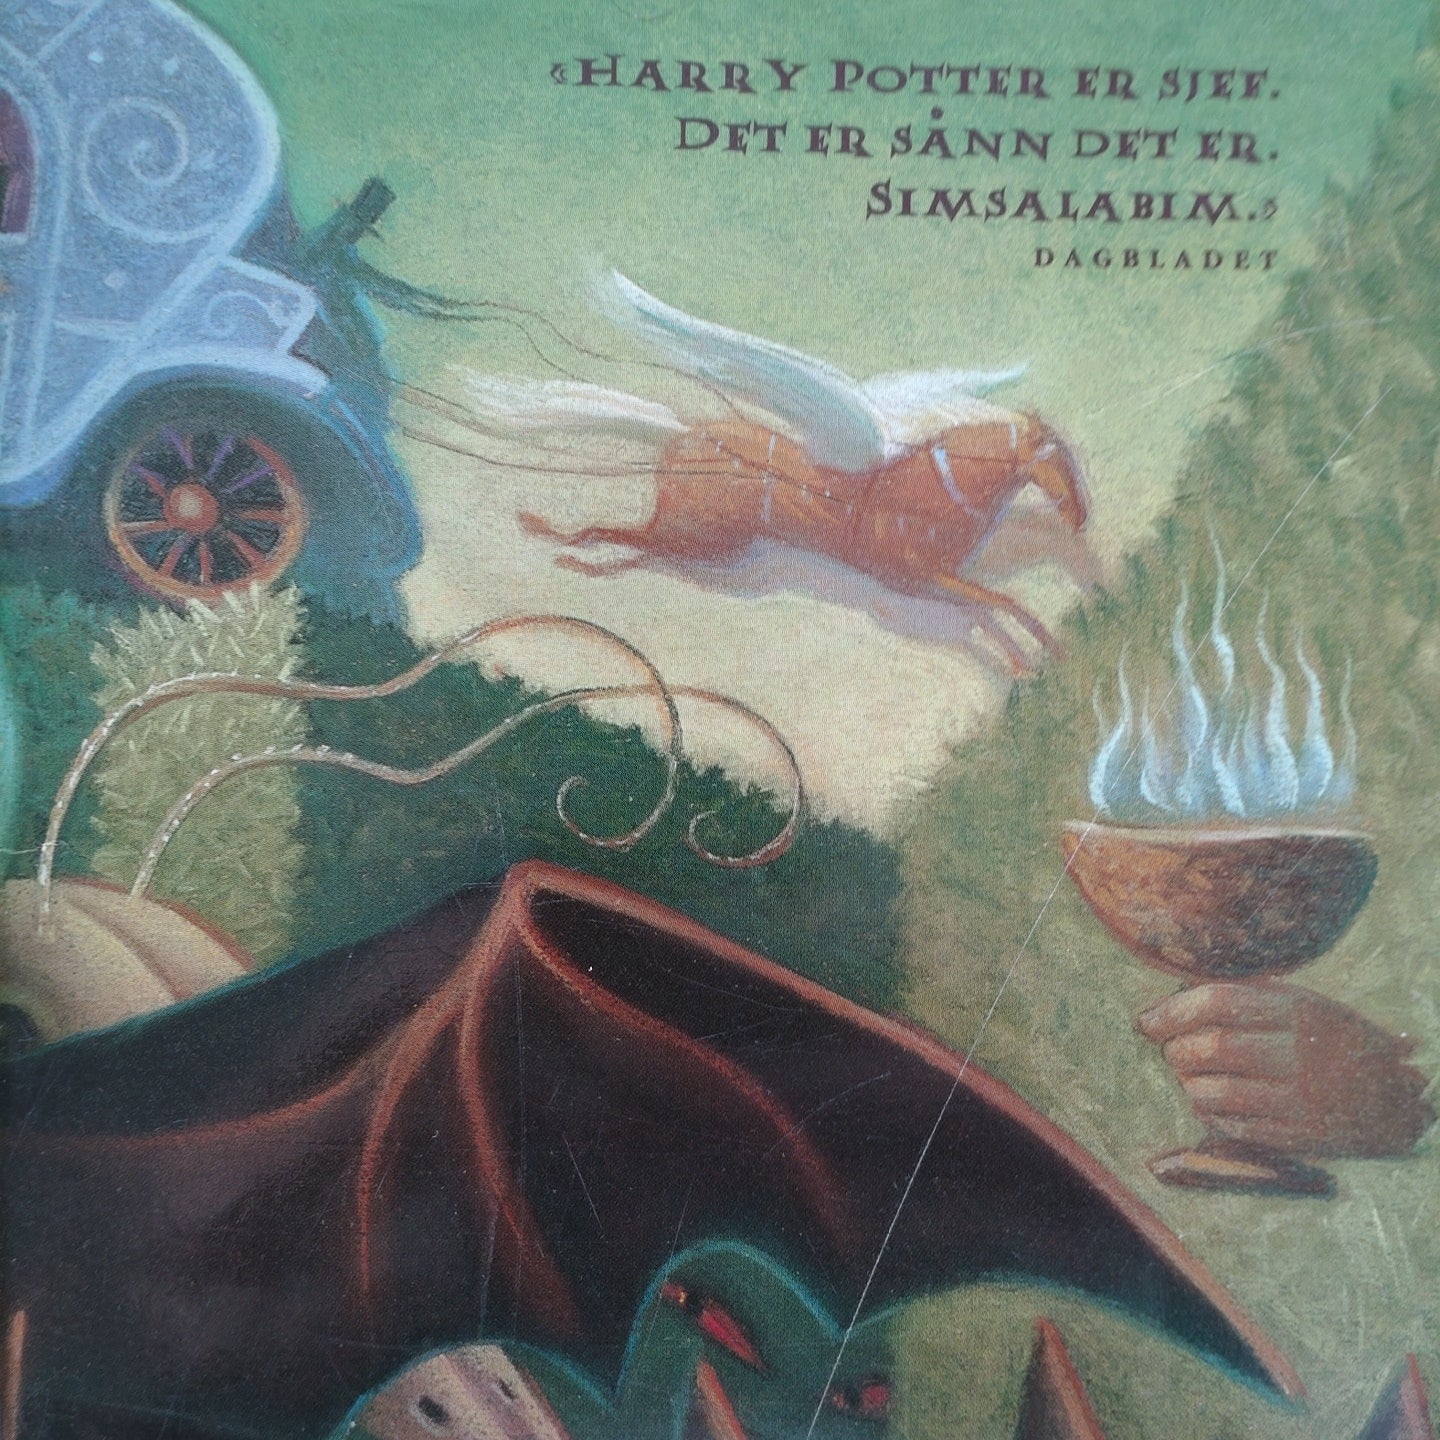 Rowling, J.K.: Harry Potter (4) og ildbegeret